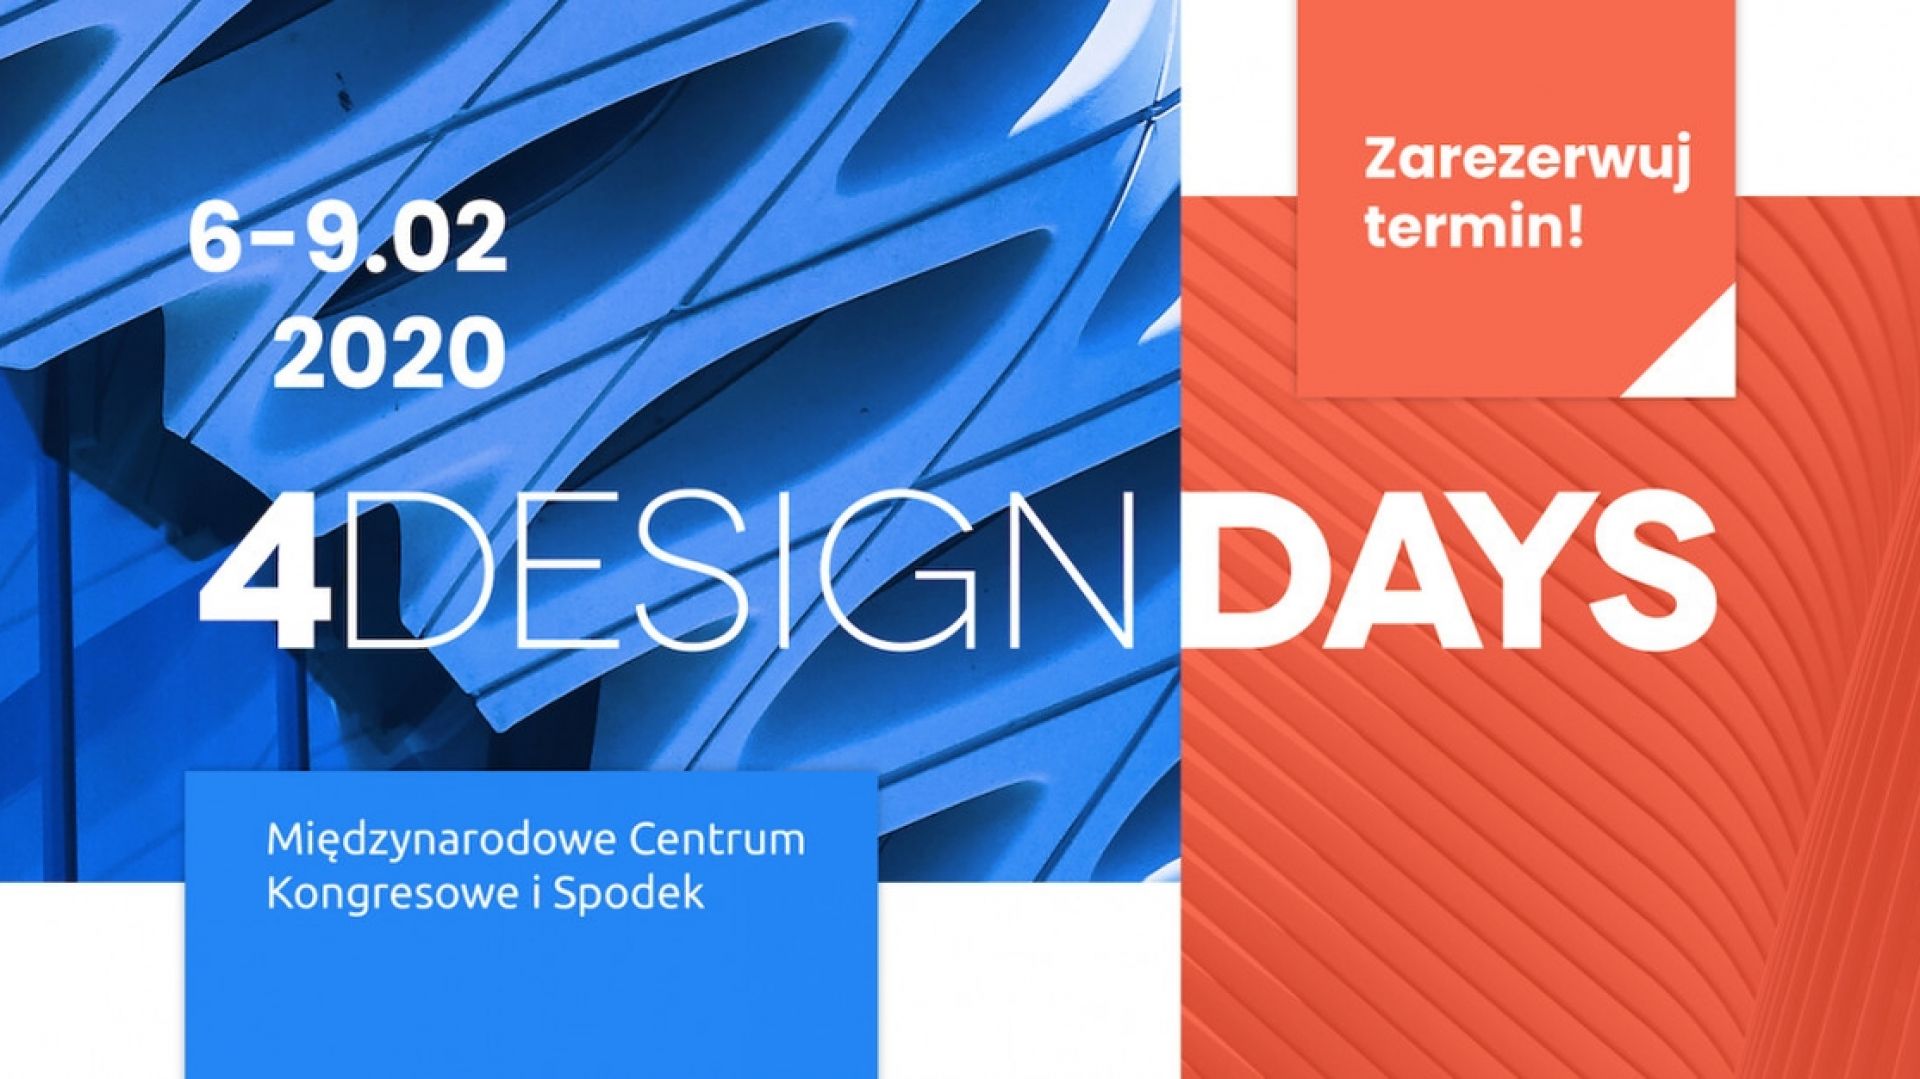 4 Design Days 6-9.02 2020 Międzynarodowe Centrum Kongresowe i Spodek